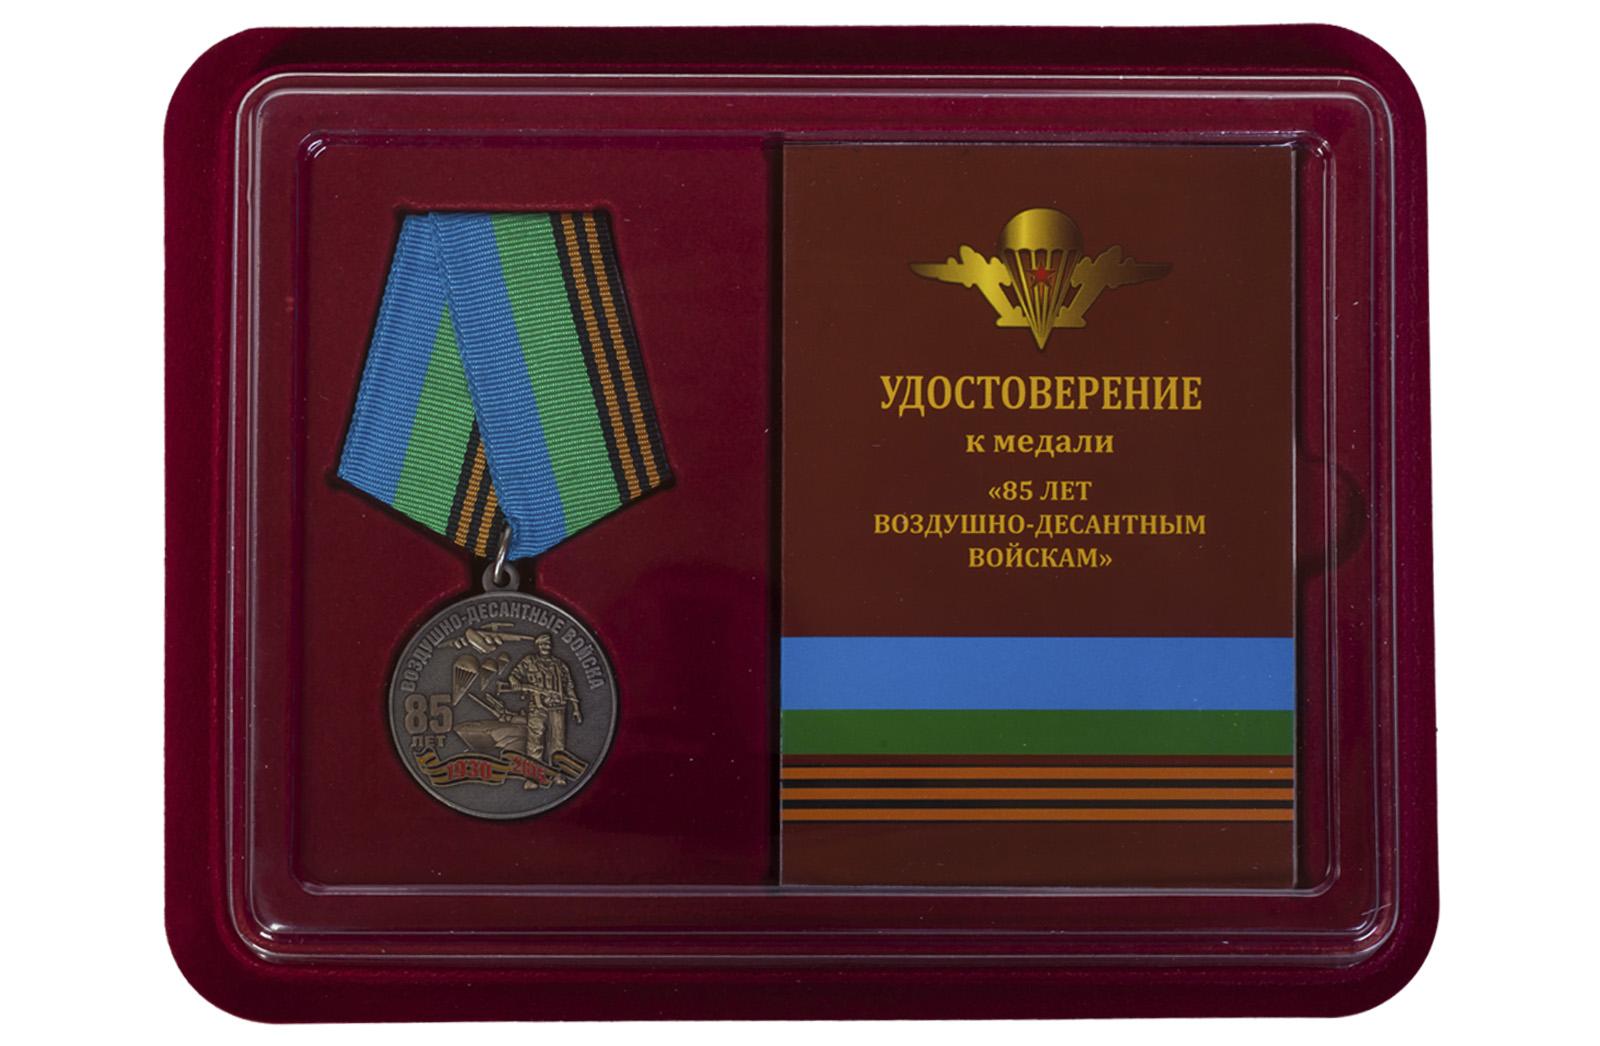 Купить медаль с символикой ВДВ в бархатистом футляре онлайн с доставкой